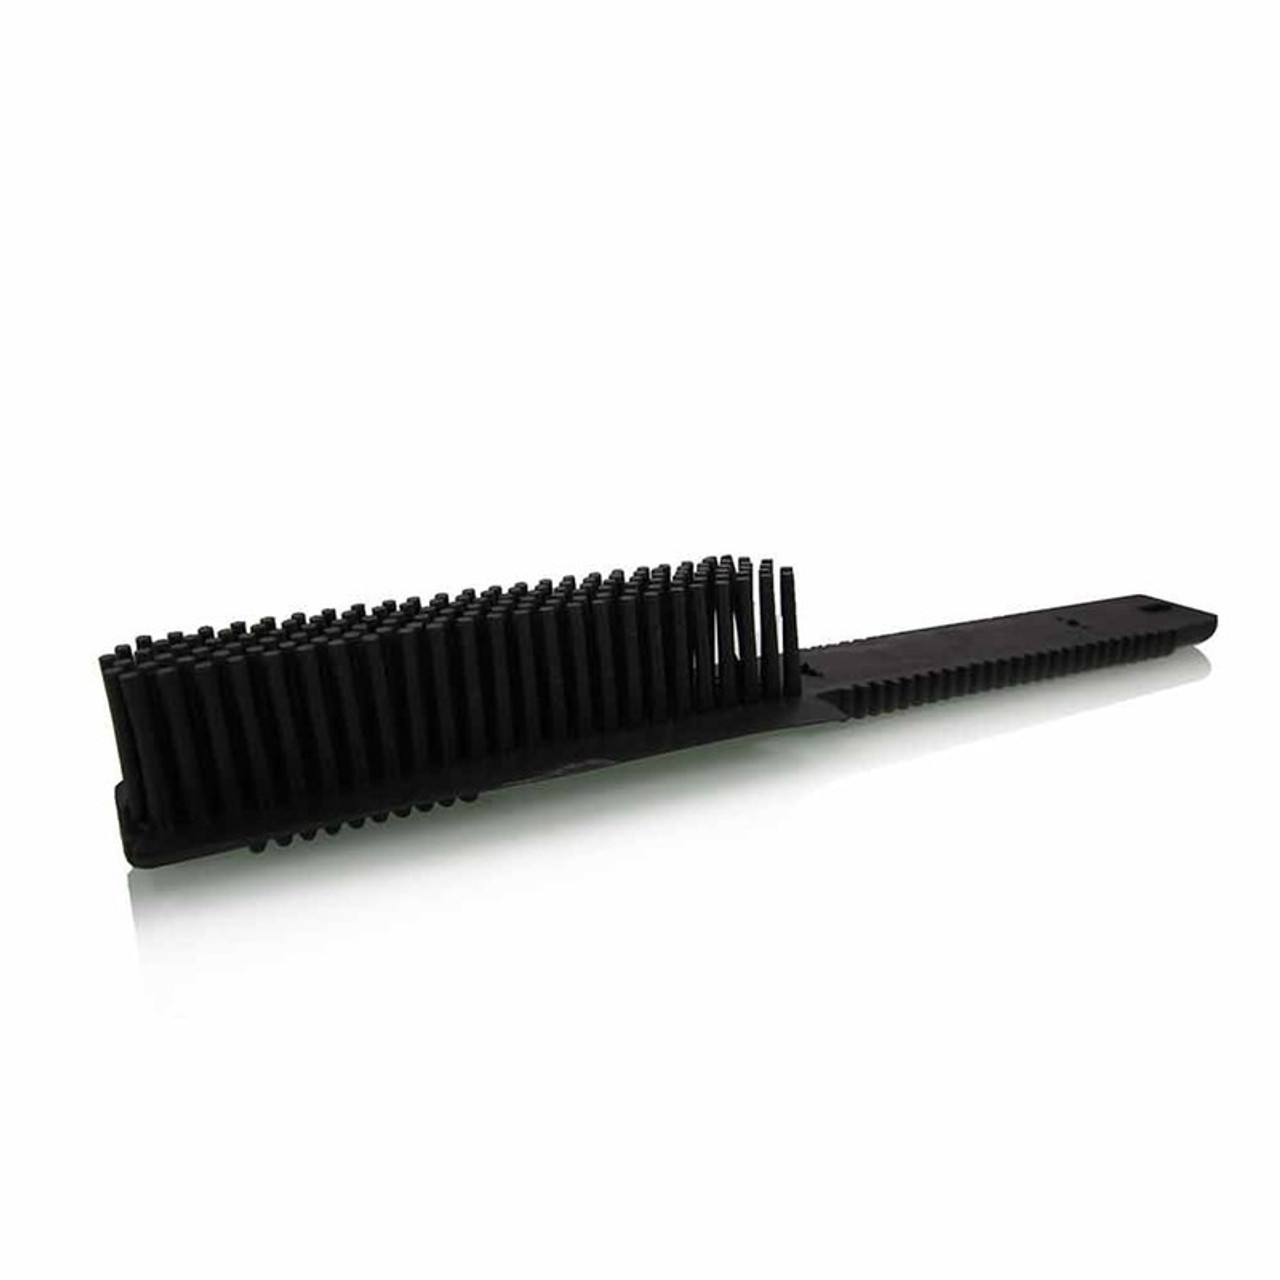 ACCS91 - Best Detailing Brush 1'' Round Detailing Brush - Detail